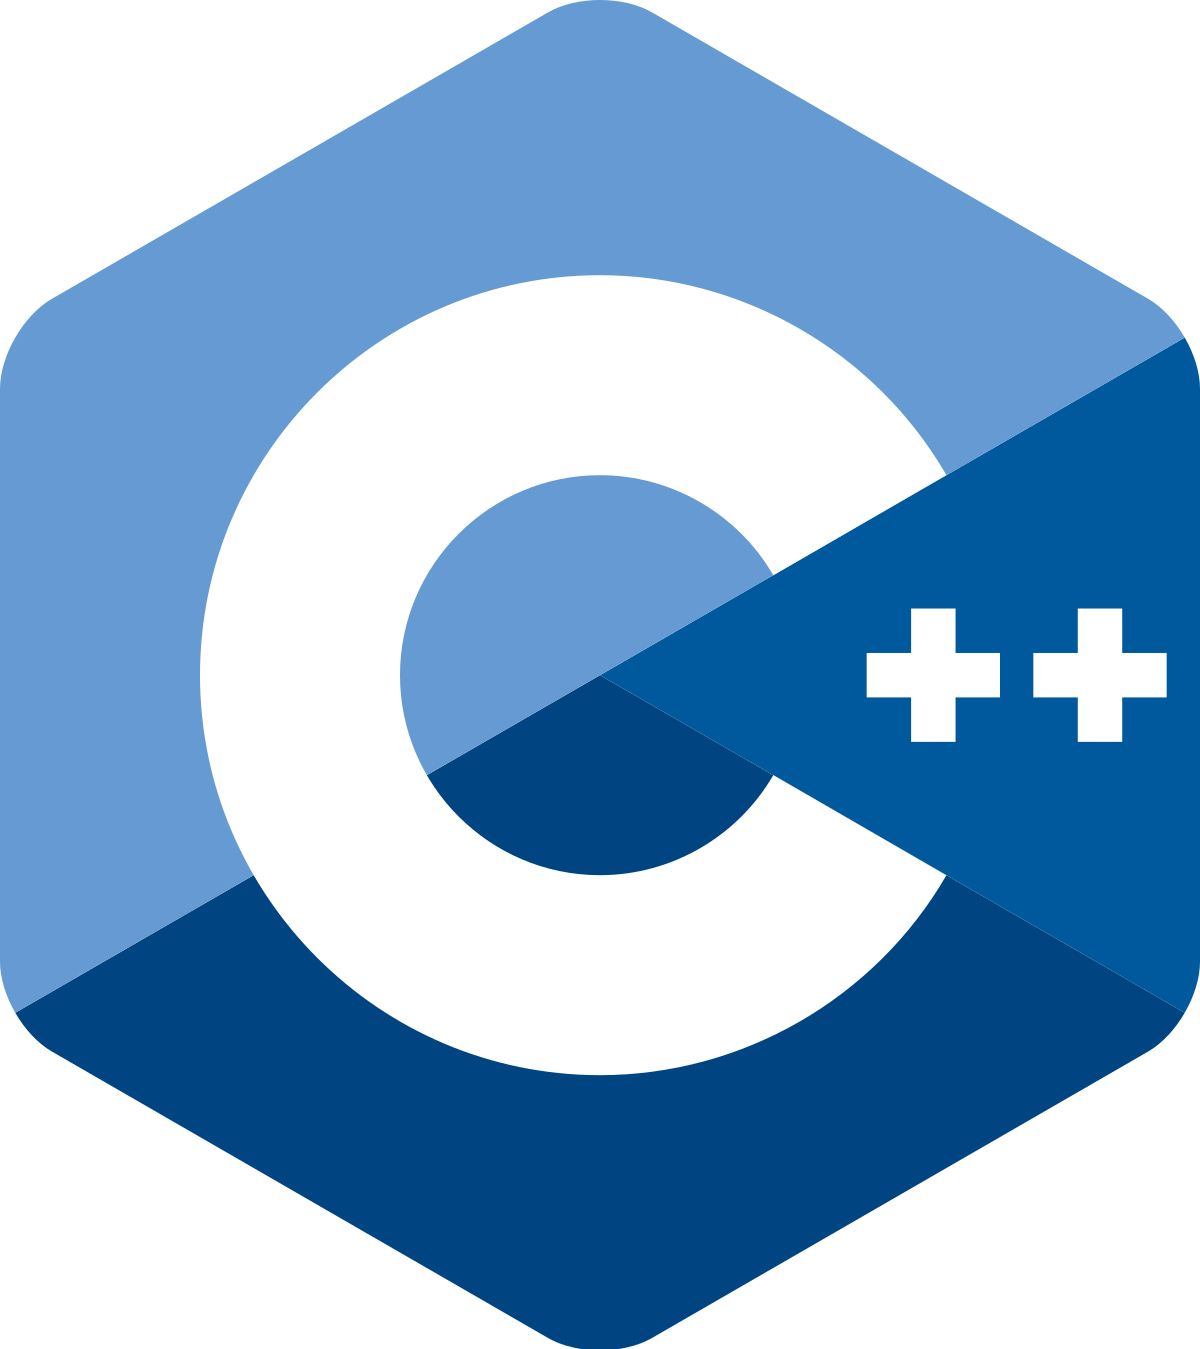 C++ example code